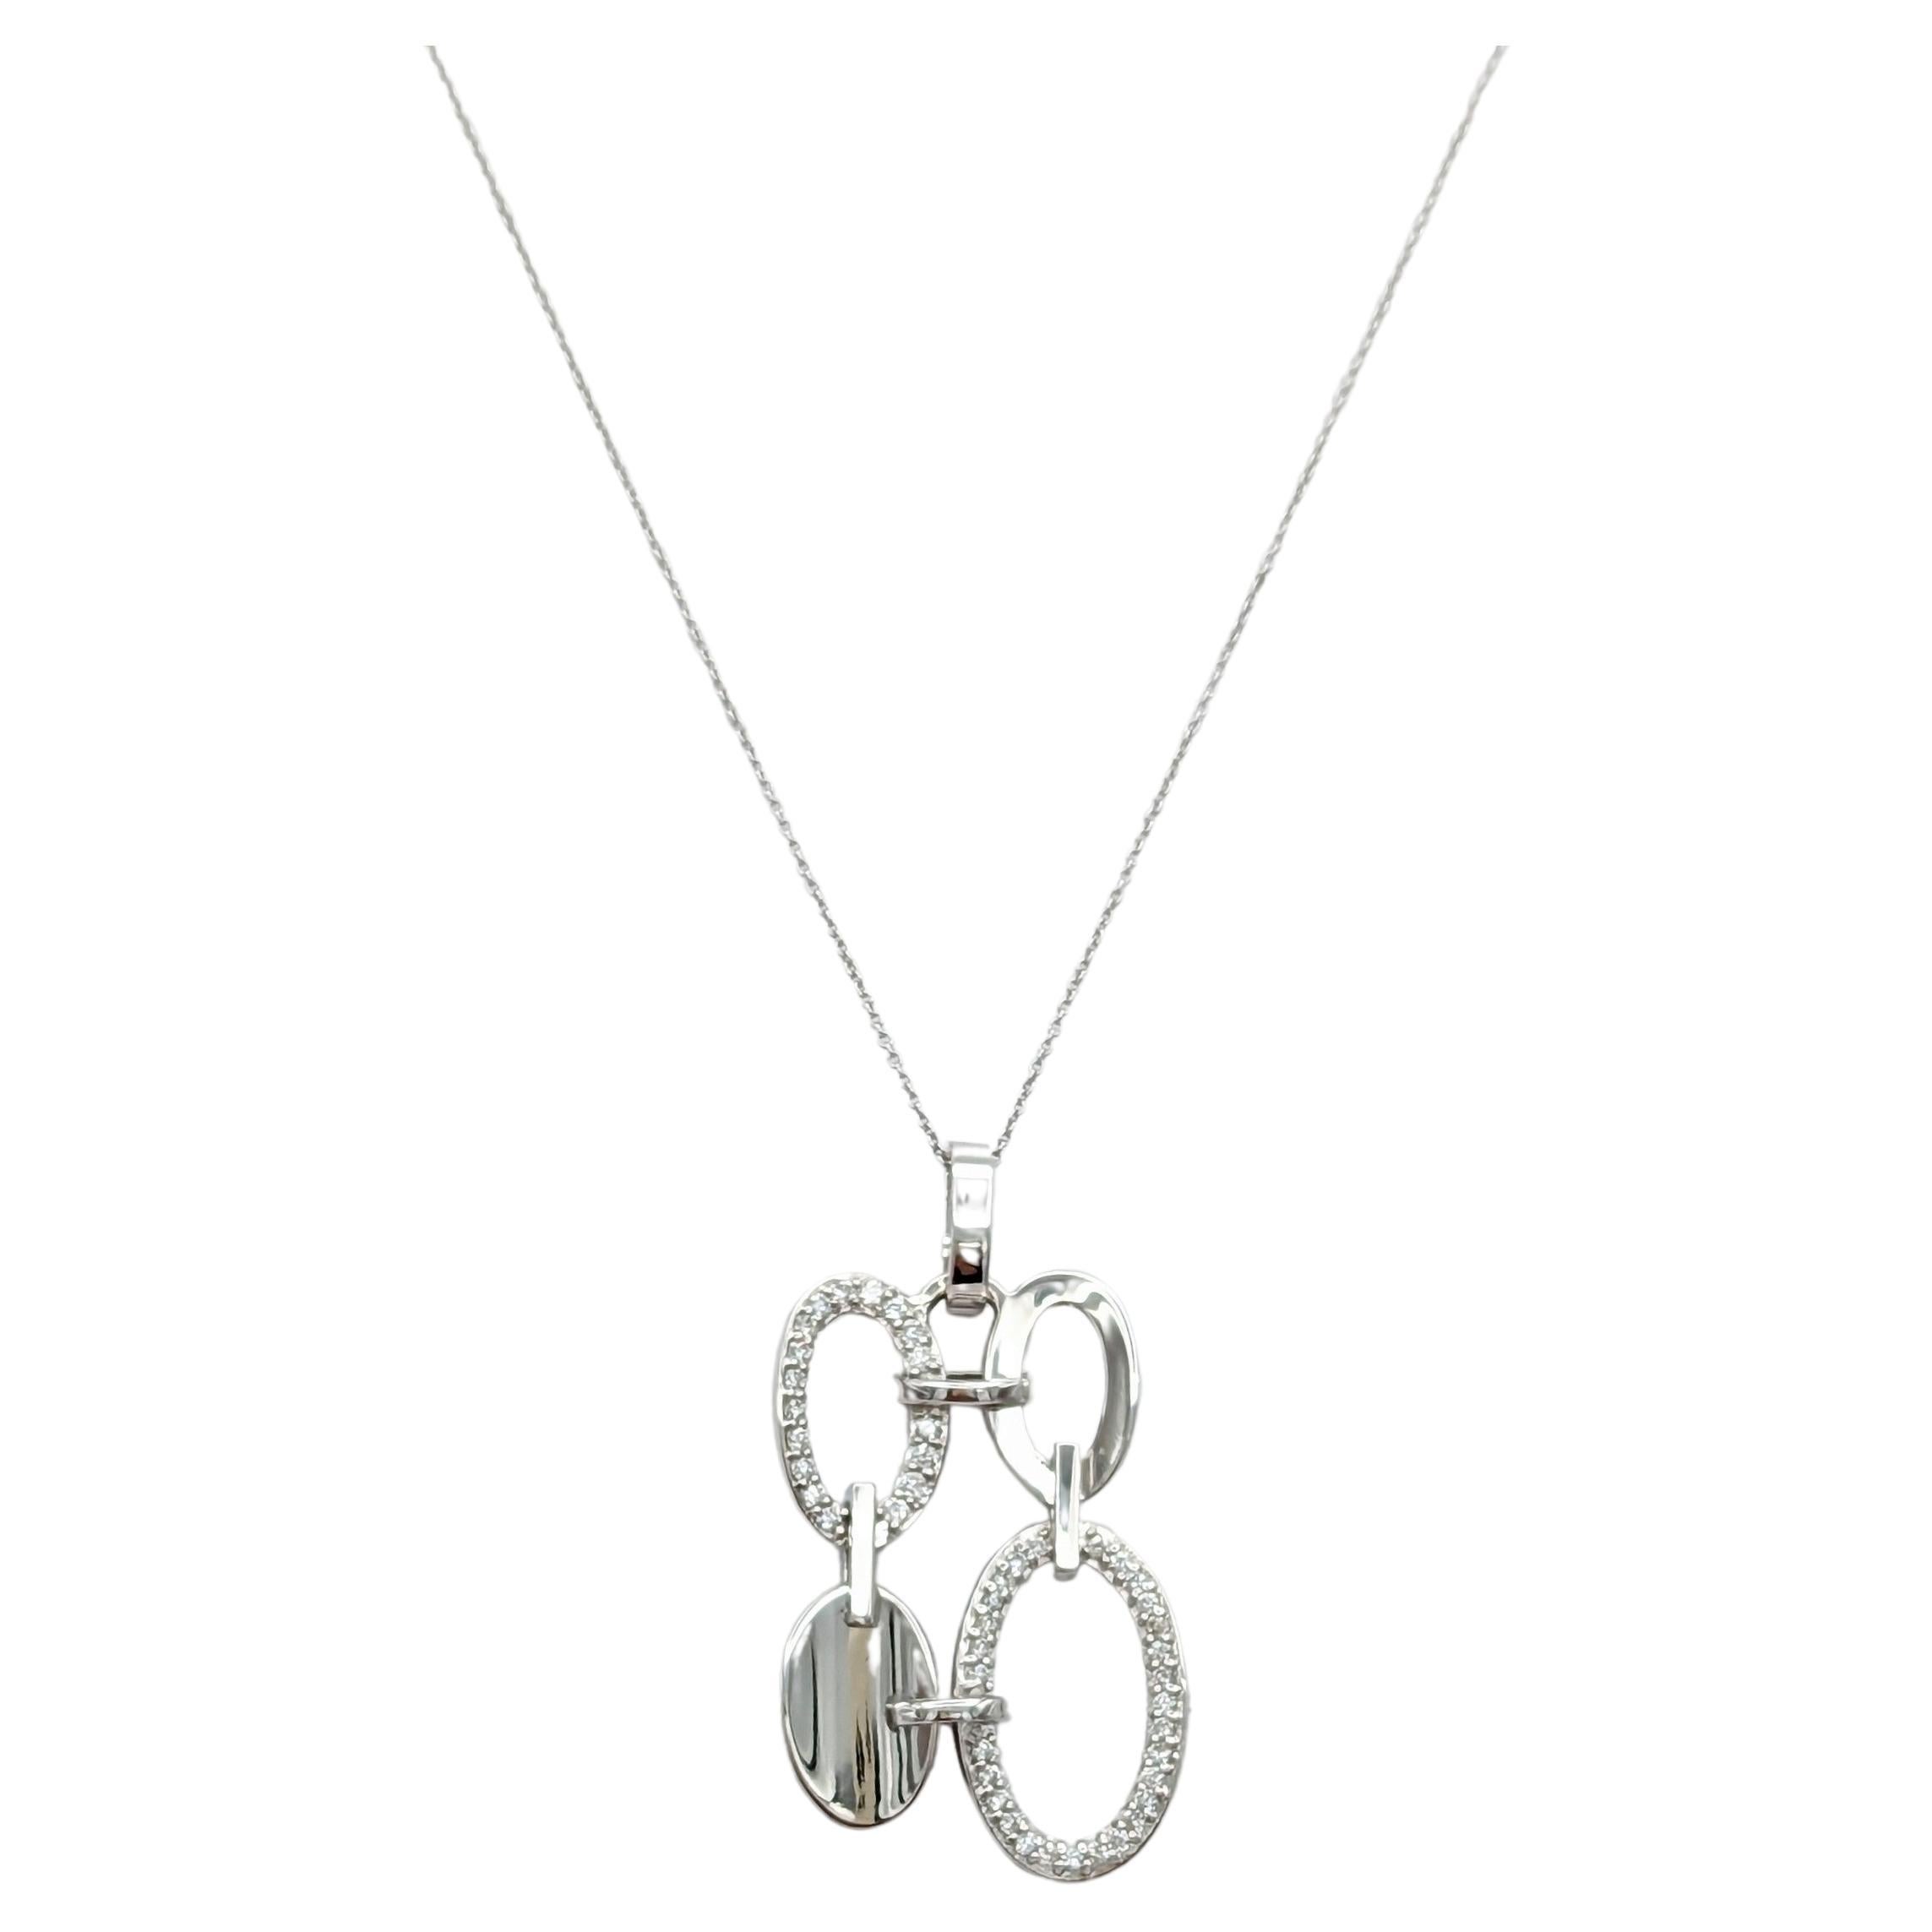 White Diamond Design Pendant Necklace in 14K White Gold